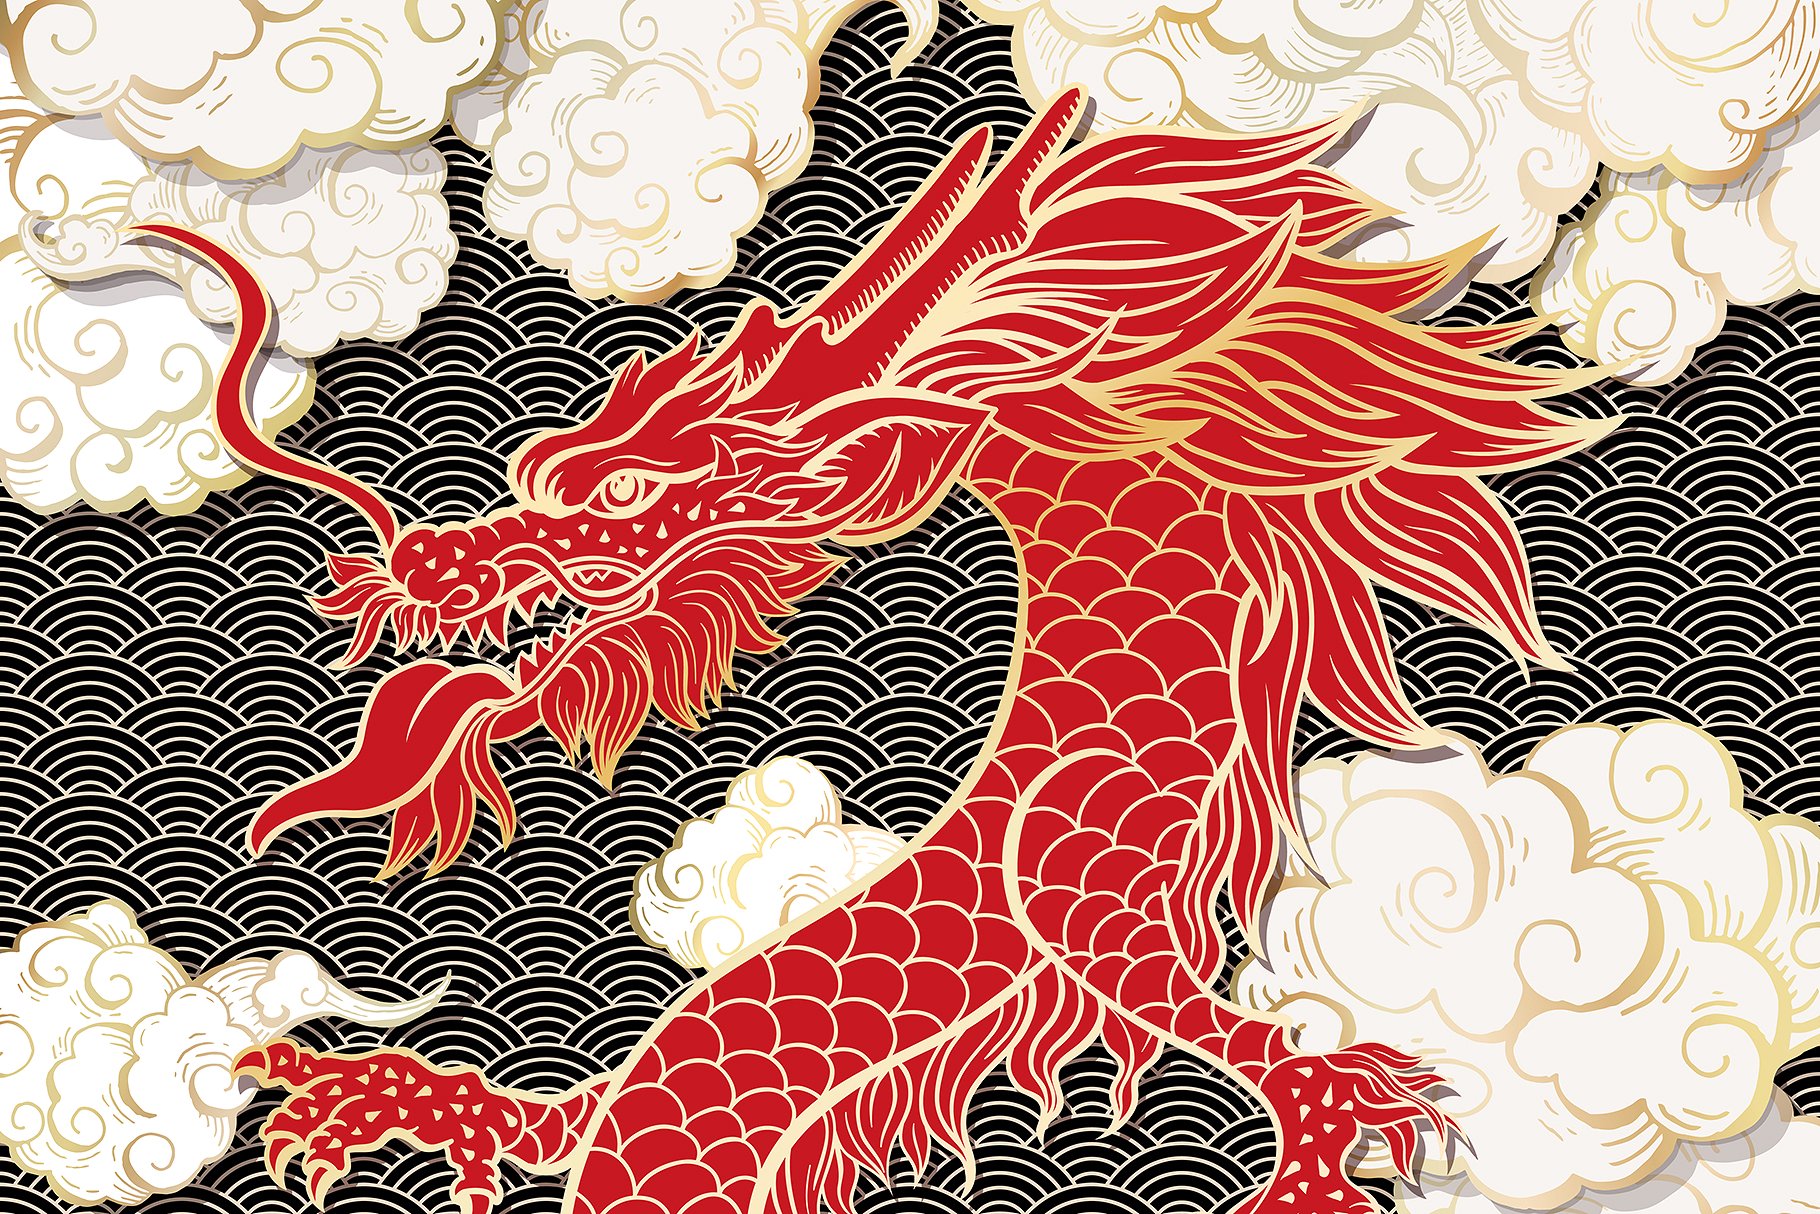 手绘中国风格中国龙AI矢量插图 Hand Drawn Chinese Style Chinese Dragon Illustrator Vector illustration插图1